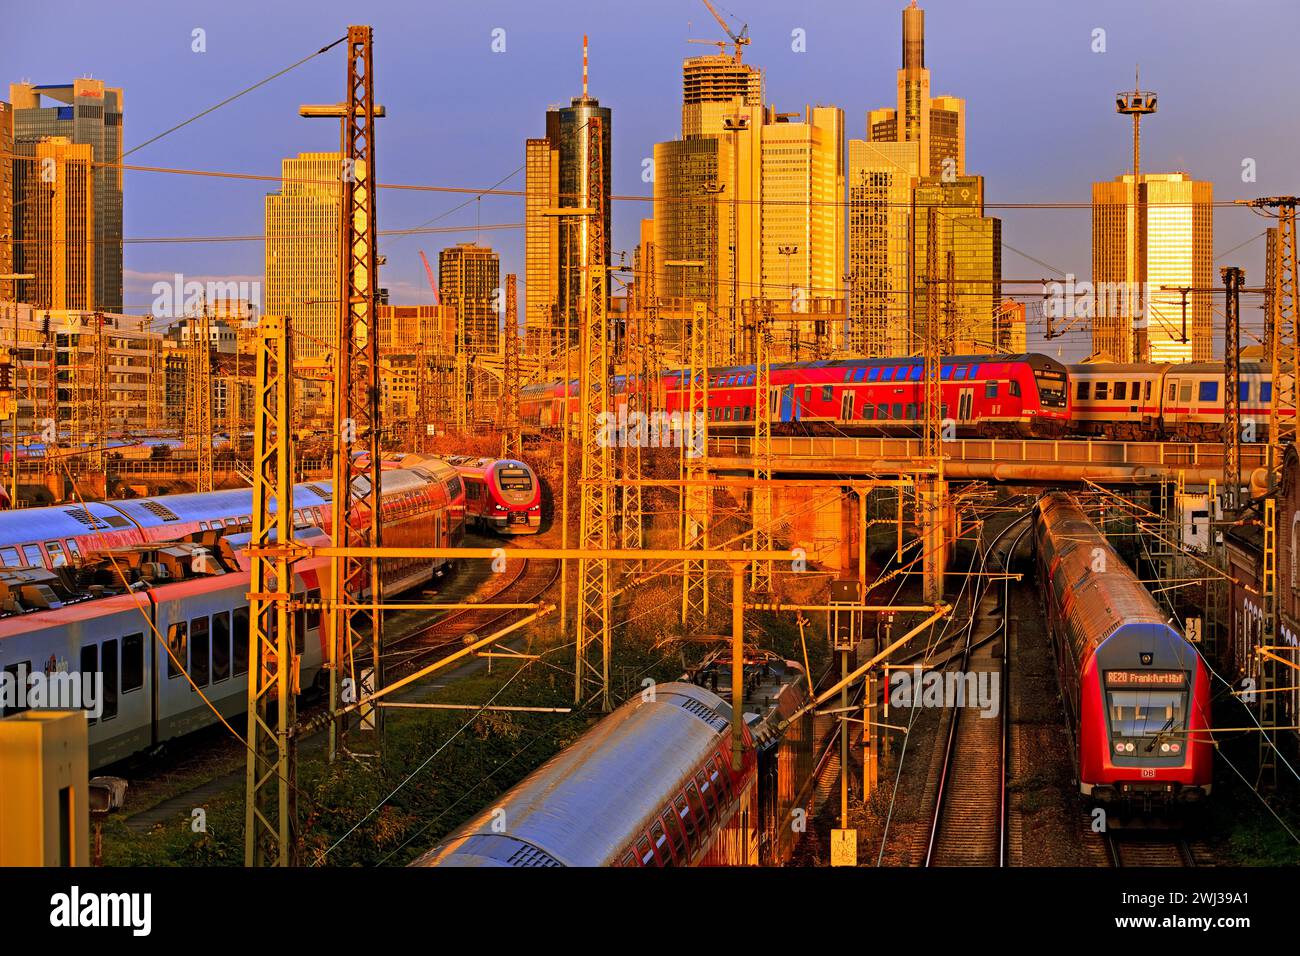 Stadtblick mit vielen Zügen, Hauptbahnhof und Hochhäusern, Frankfurt am Main, Deutschland, Europa Stockfoto